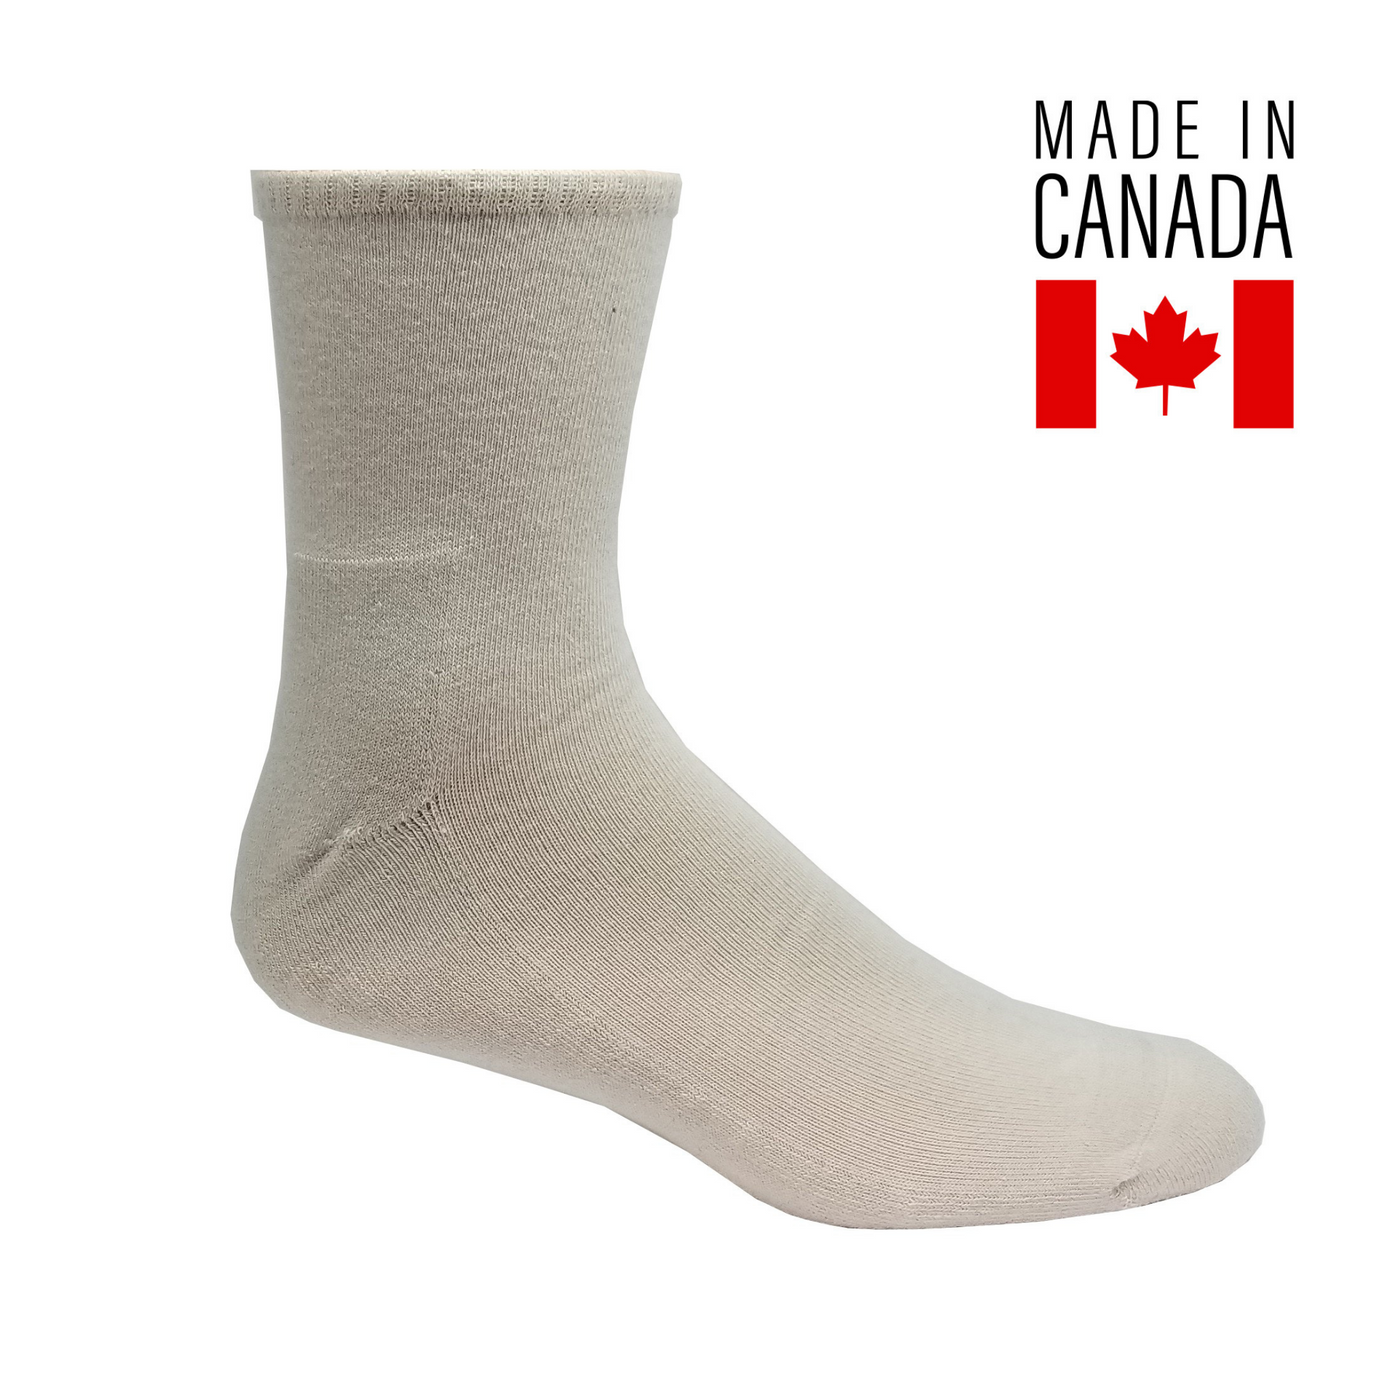 running socks made in canada